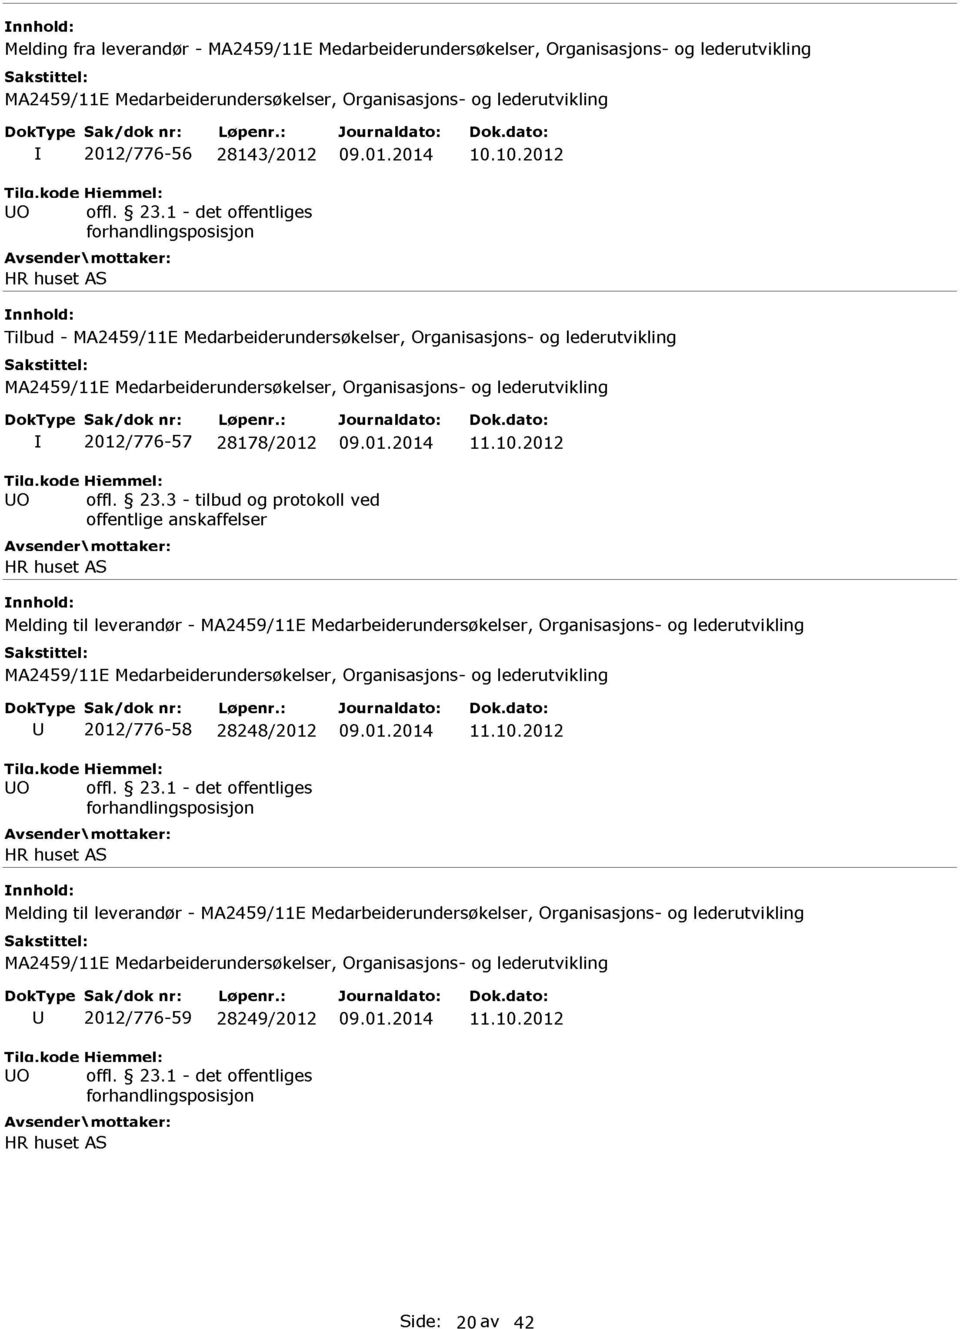 3 - tilbud og protokoll ved HR huset AS Melding til leverandør - U 2012/776-58 28248/2012 09.